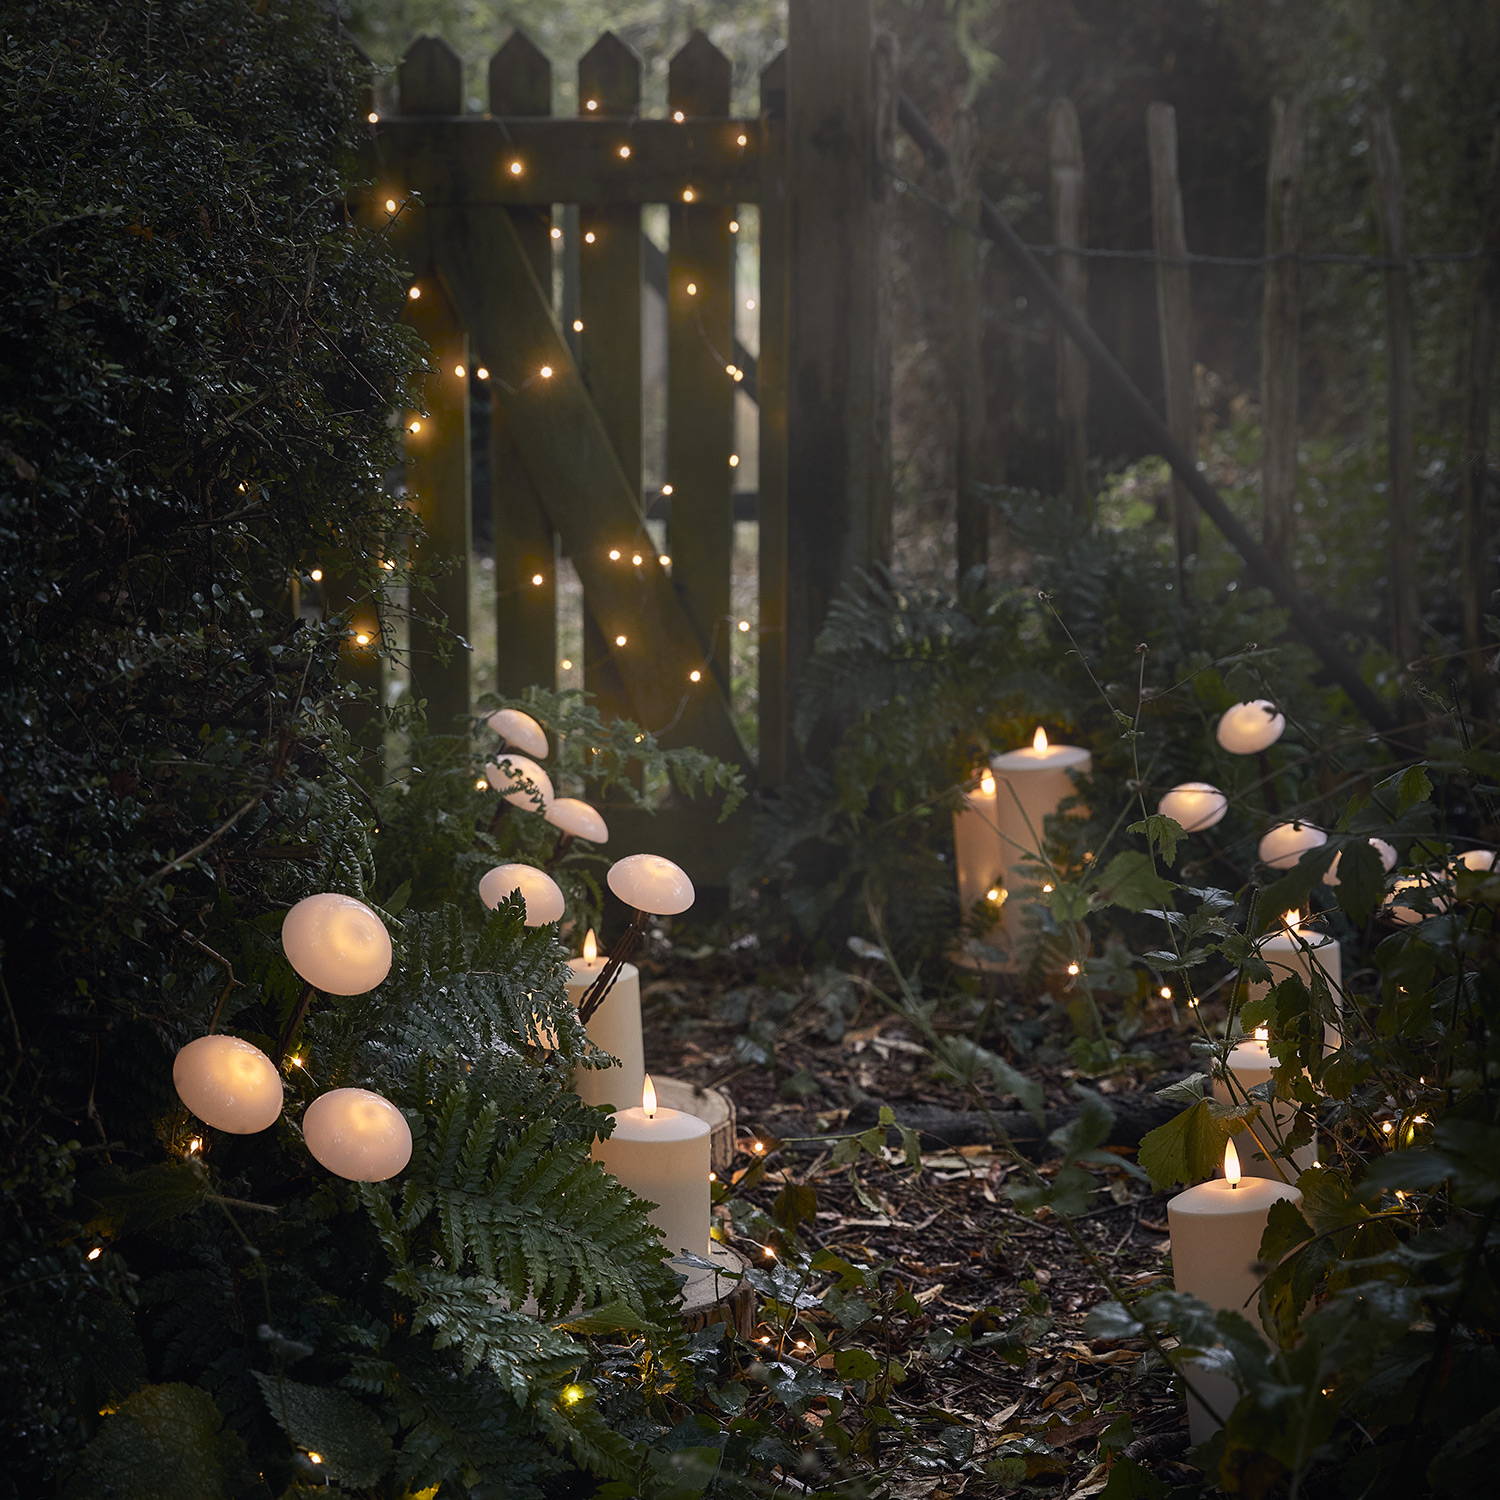 Des balises solaires en forme de champignons, des bougies d'extérieur et des guirlandes lumineuses pour une déco enchantée dans le jardin. 